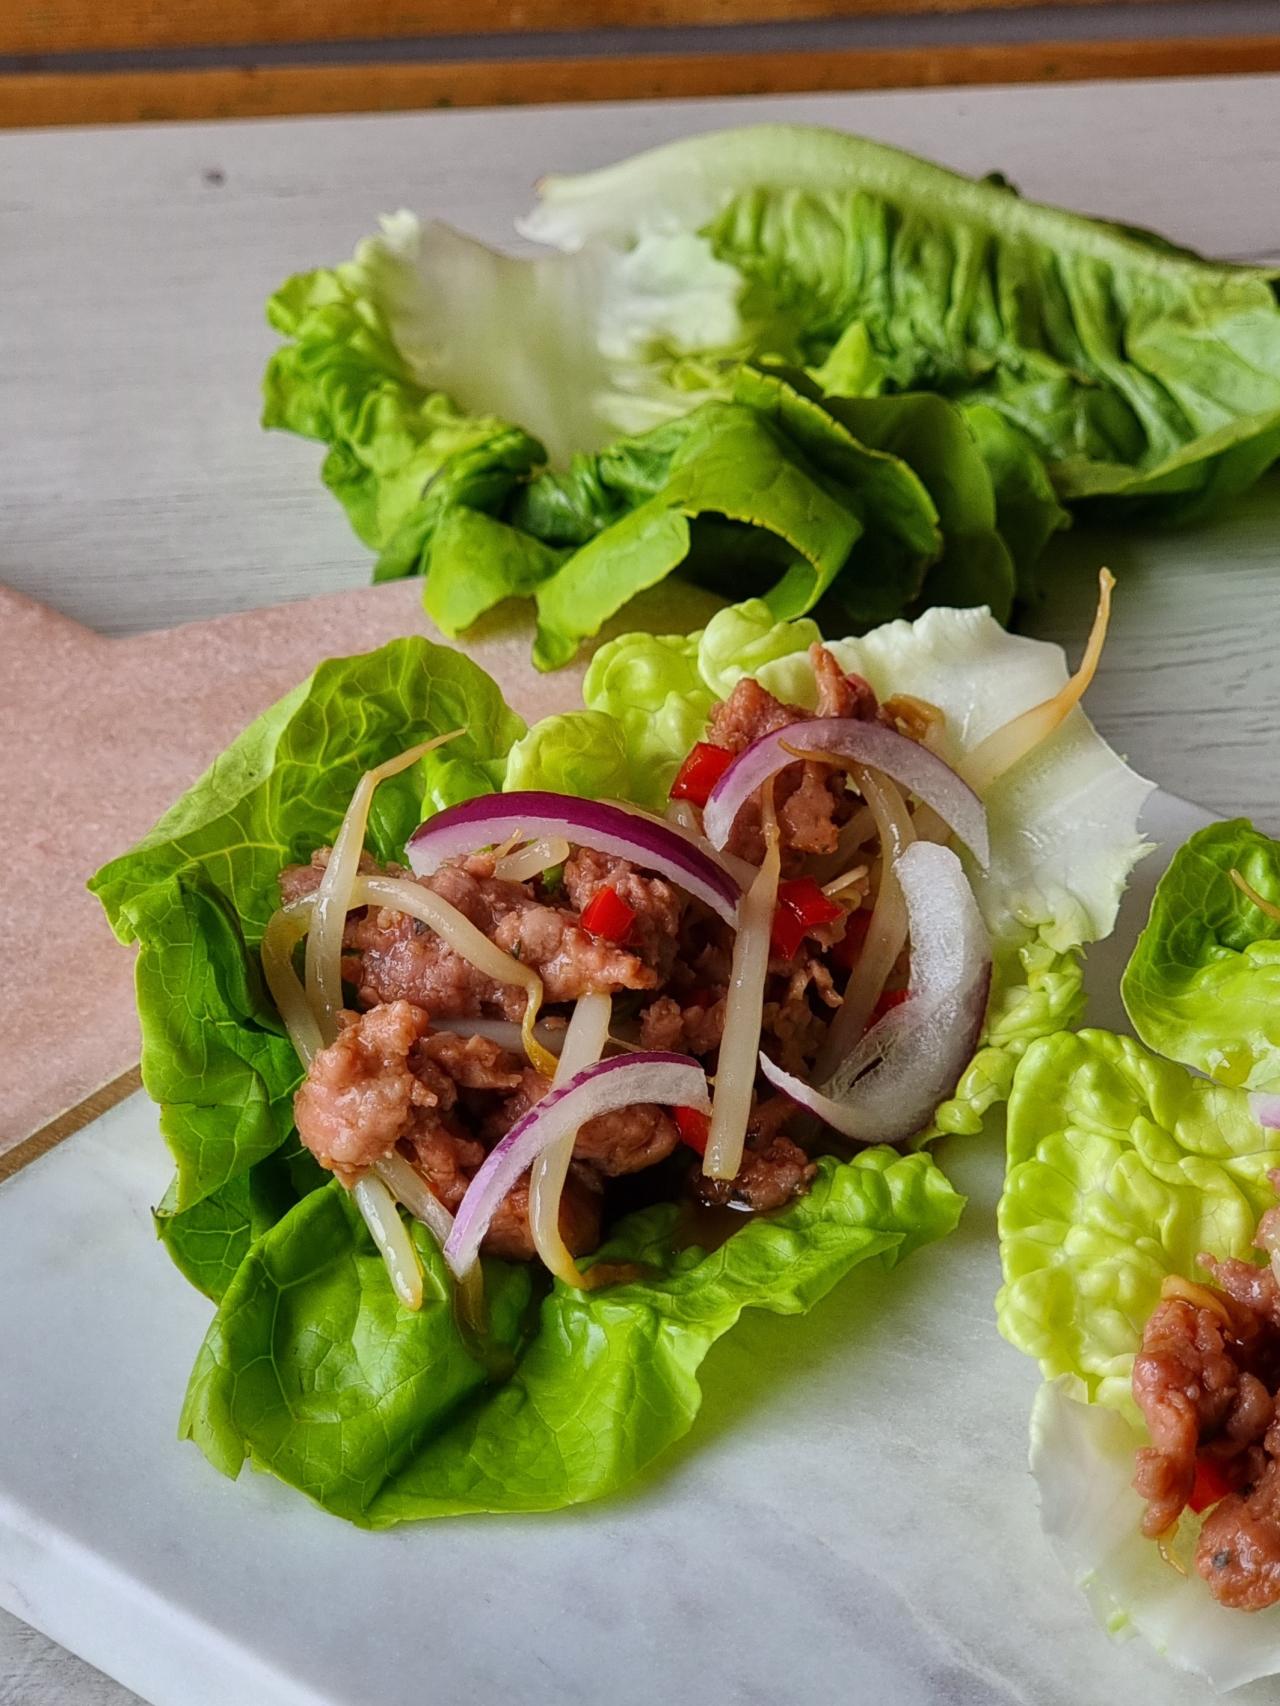 Tacos de lechuga con cerdo picado, una opción divertida para darle un toque  a tus recetas